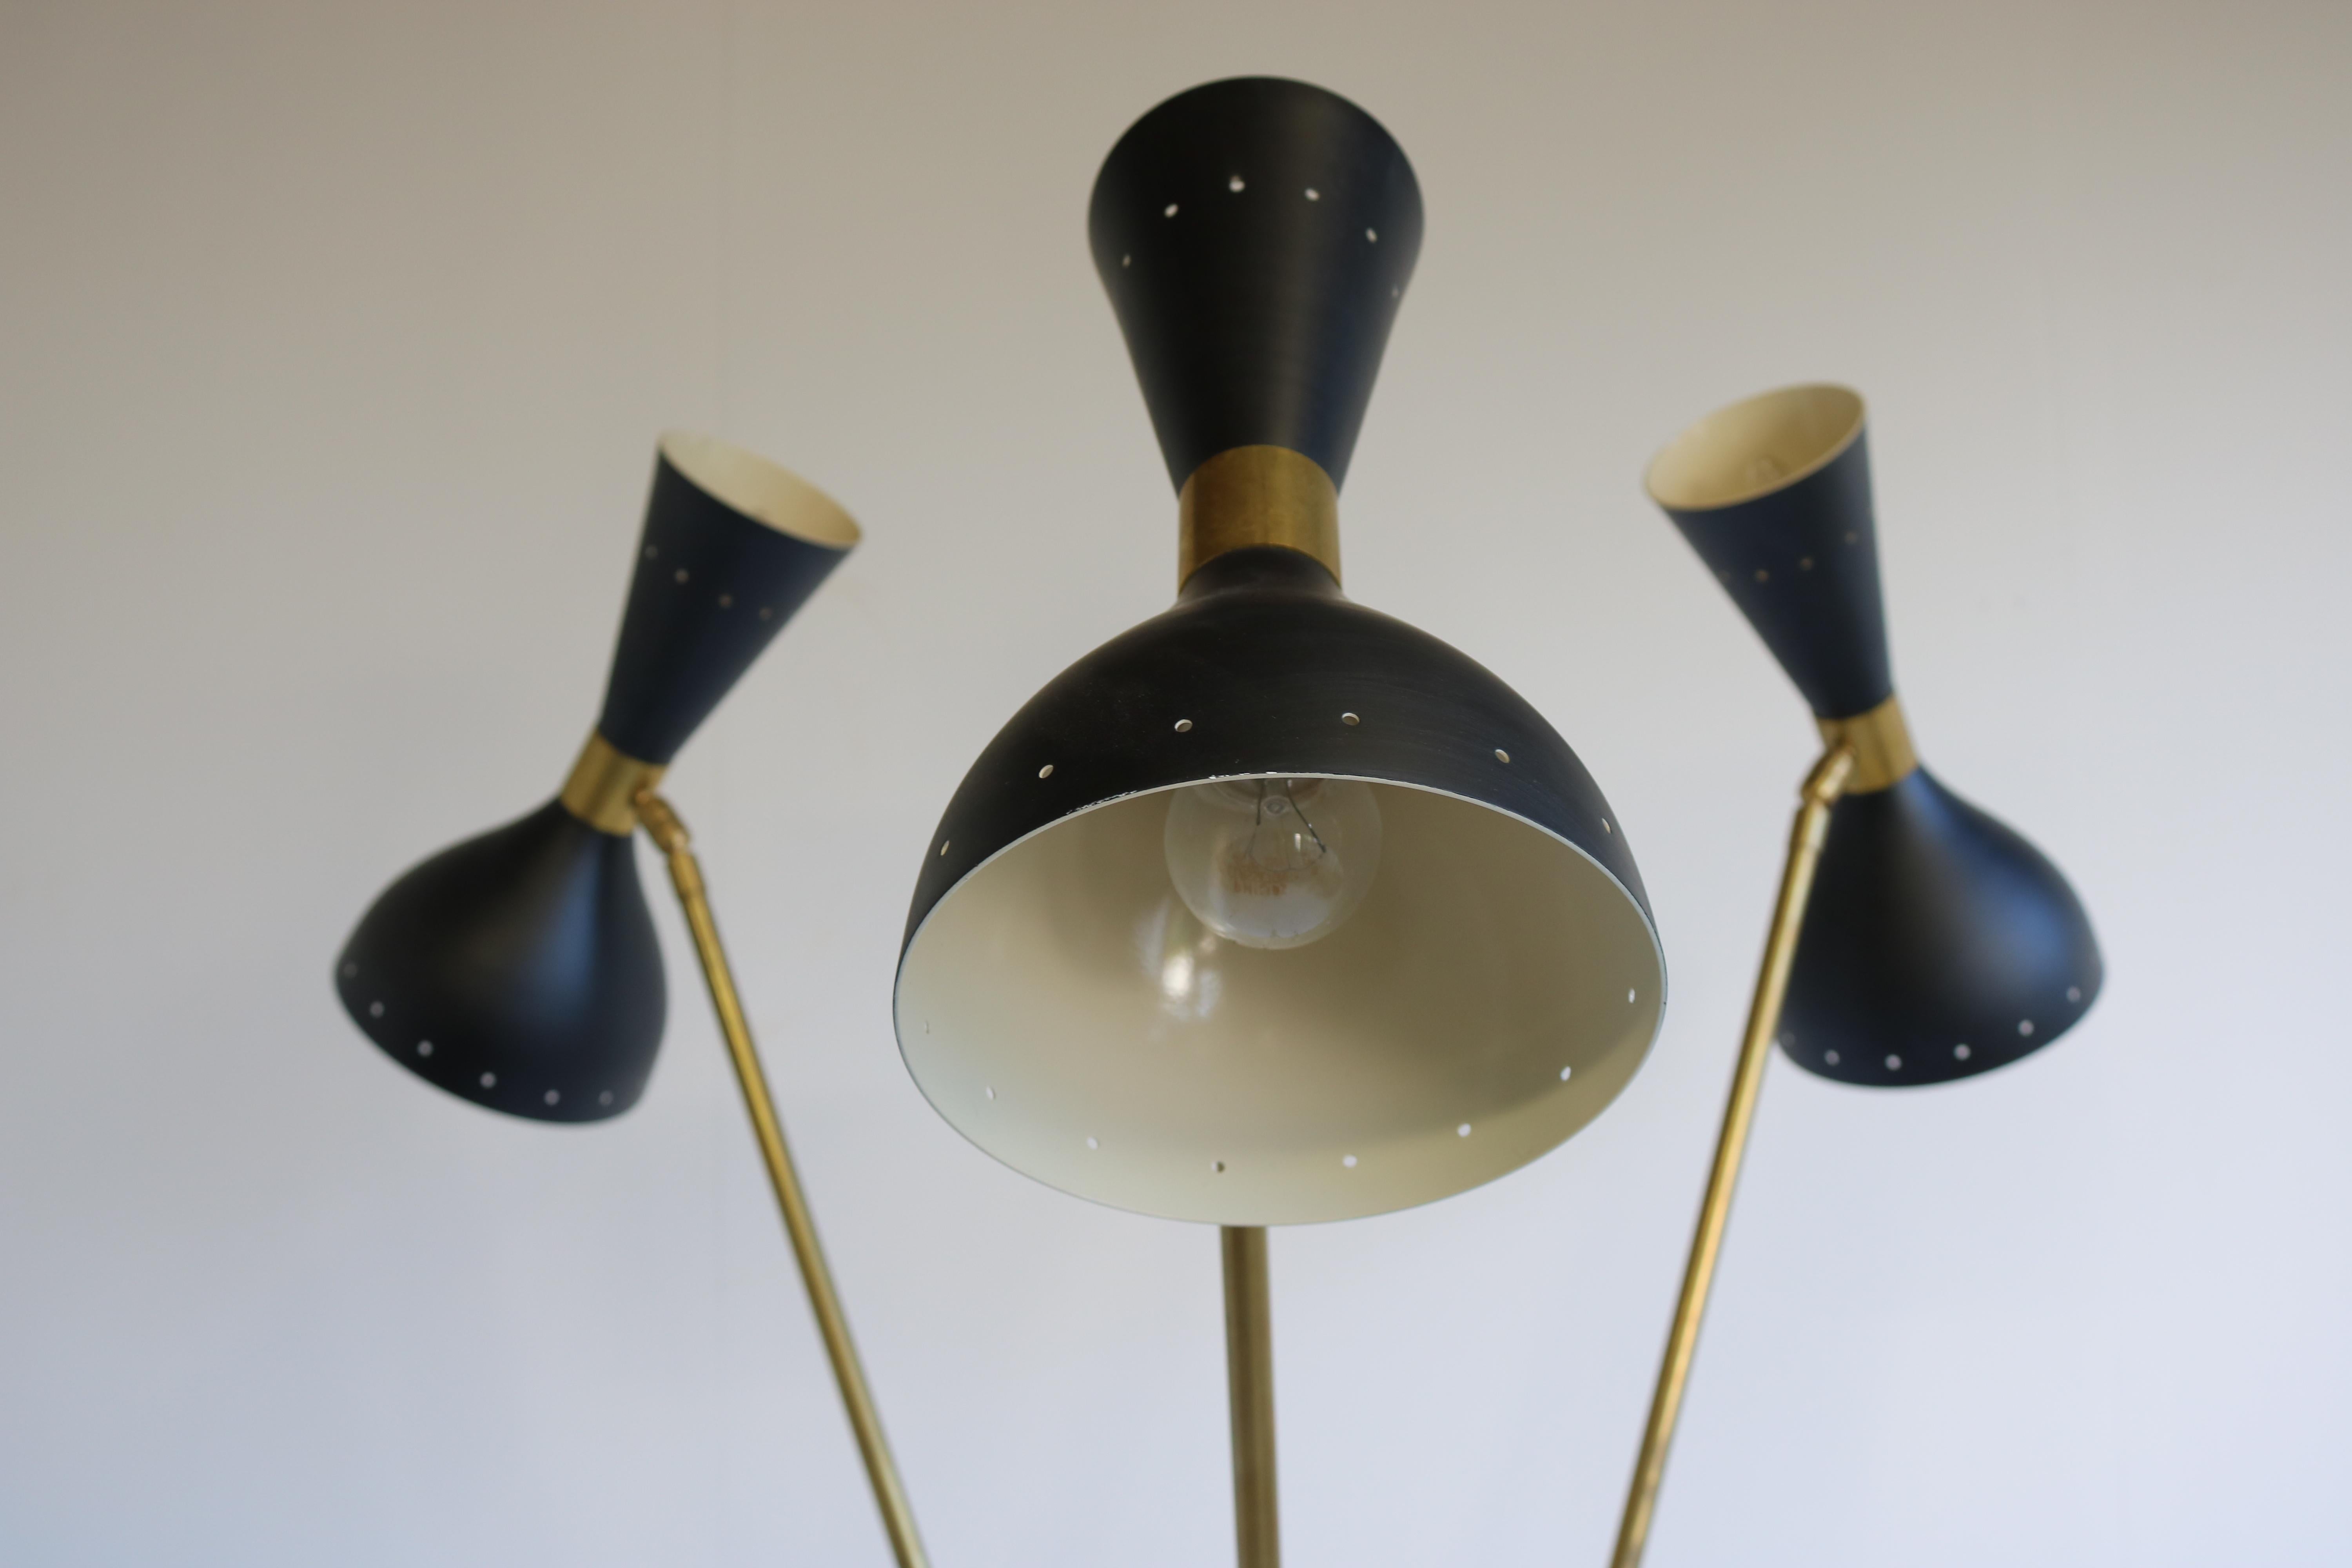 Mid-20th Century 1 of 2 Italian Minimalist Design Floor Lamp Brass Mid-Century Stilnovo style 50s